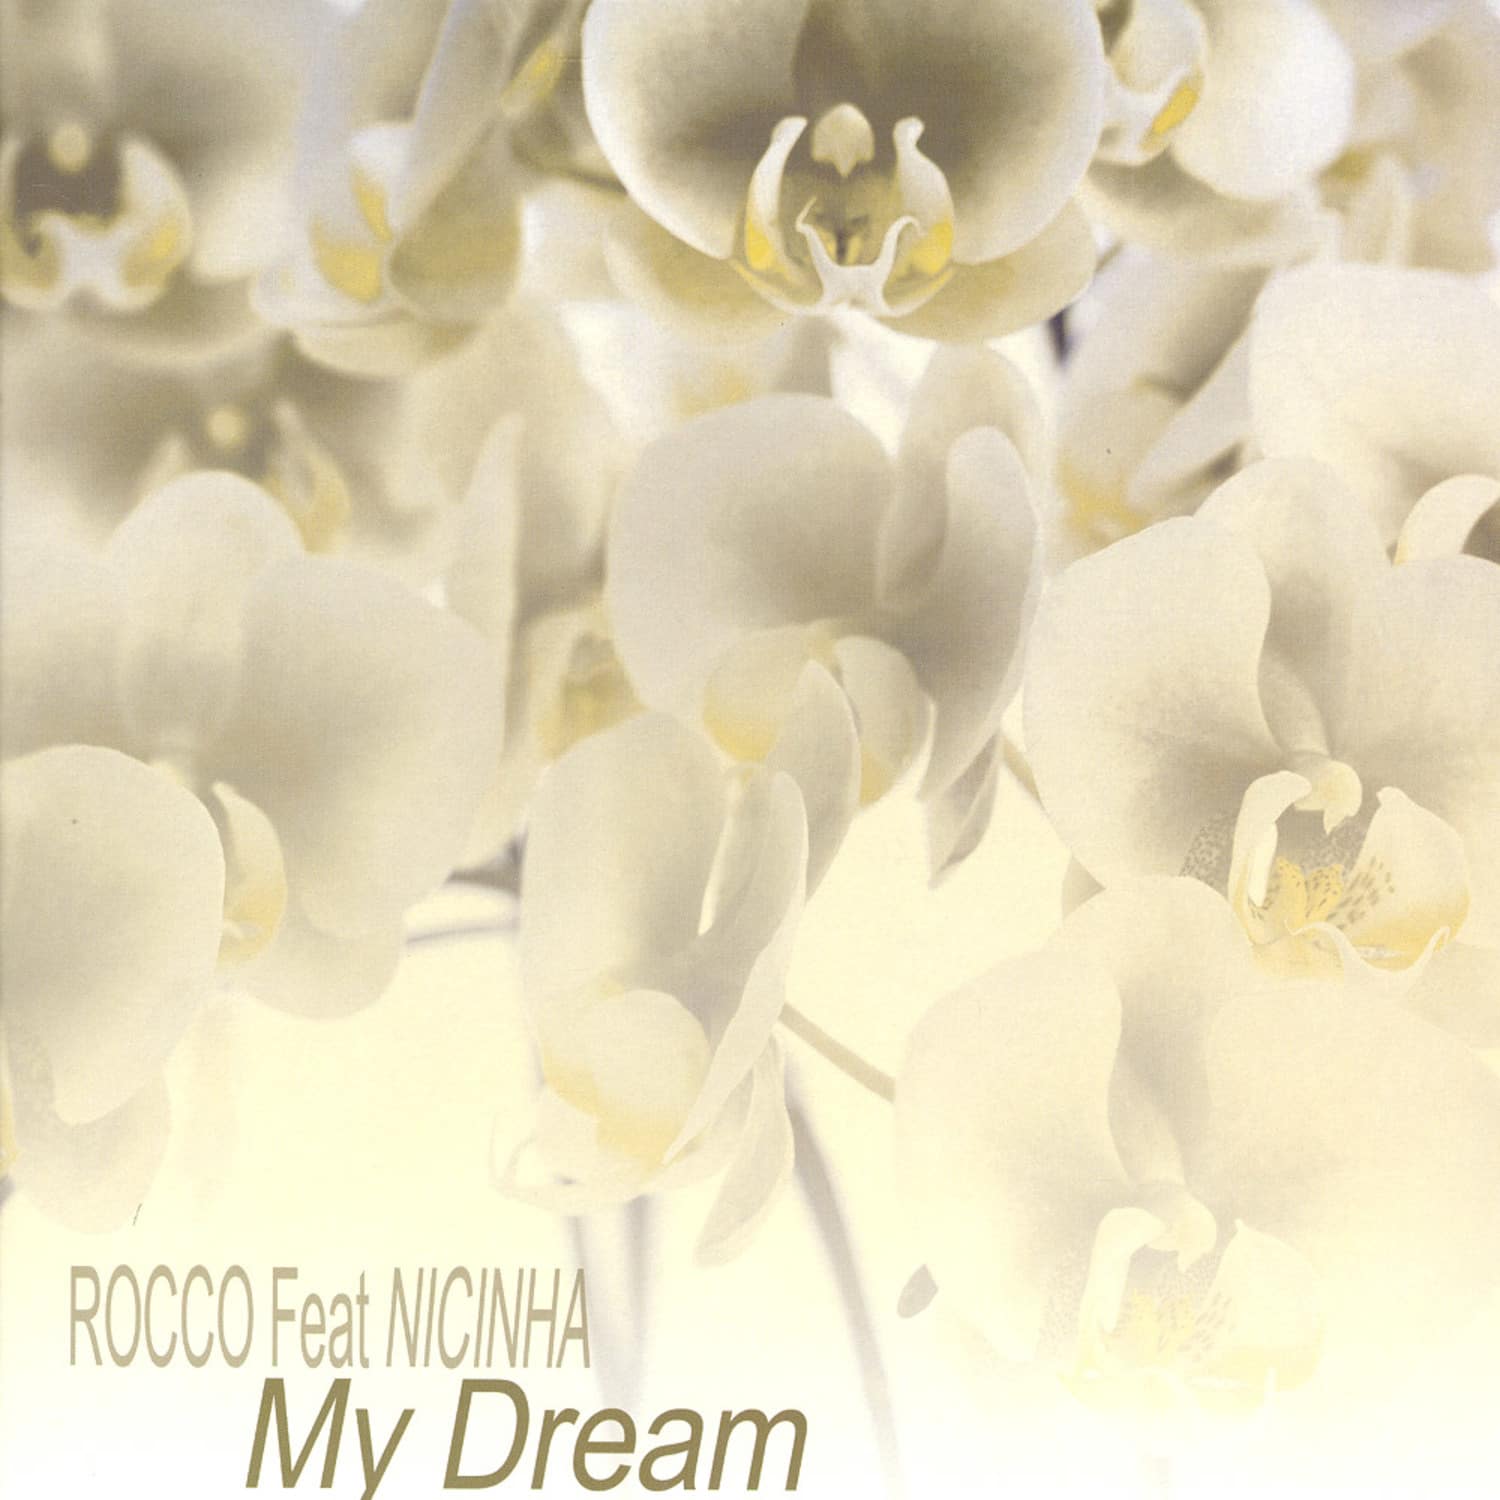 Rocco feat. Nicinha - MY DREAM